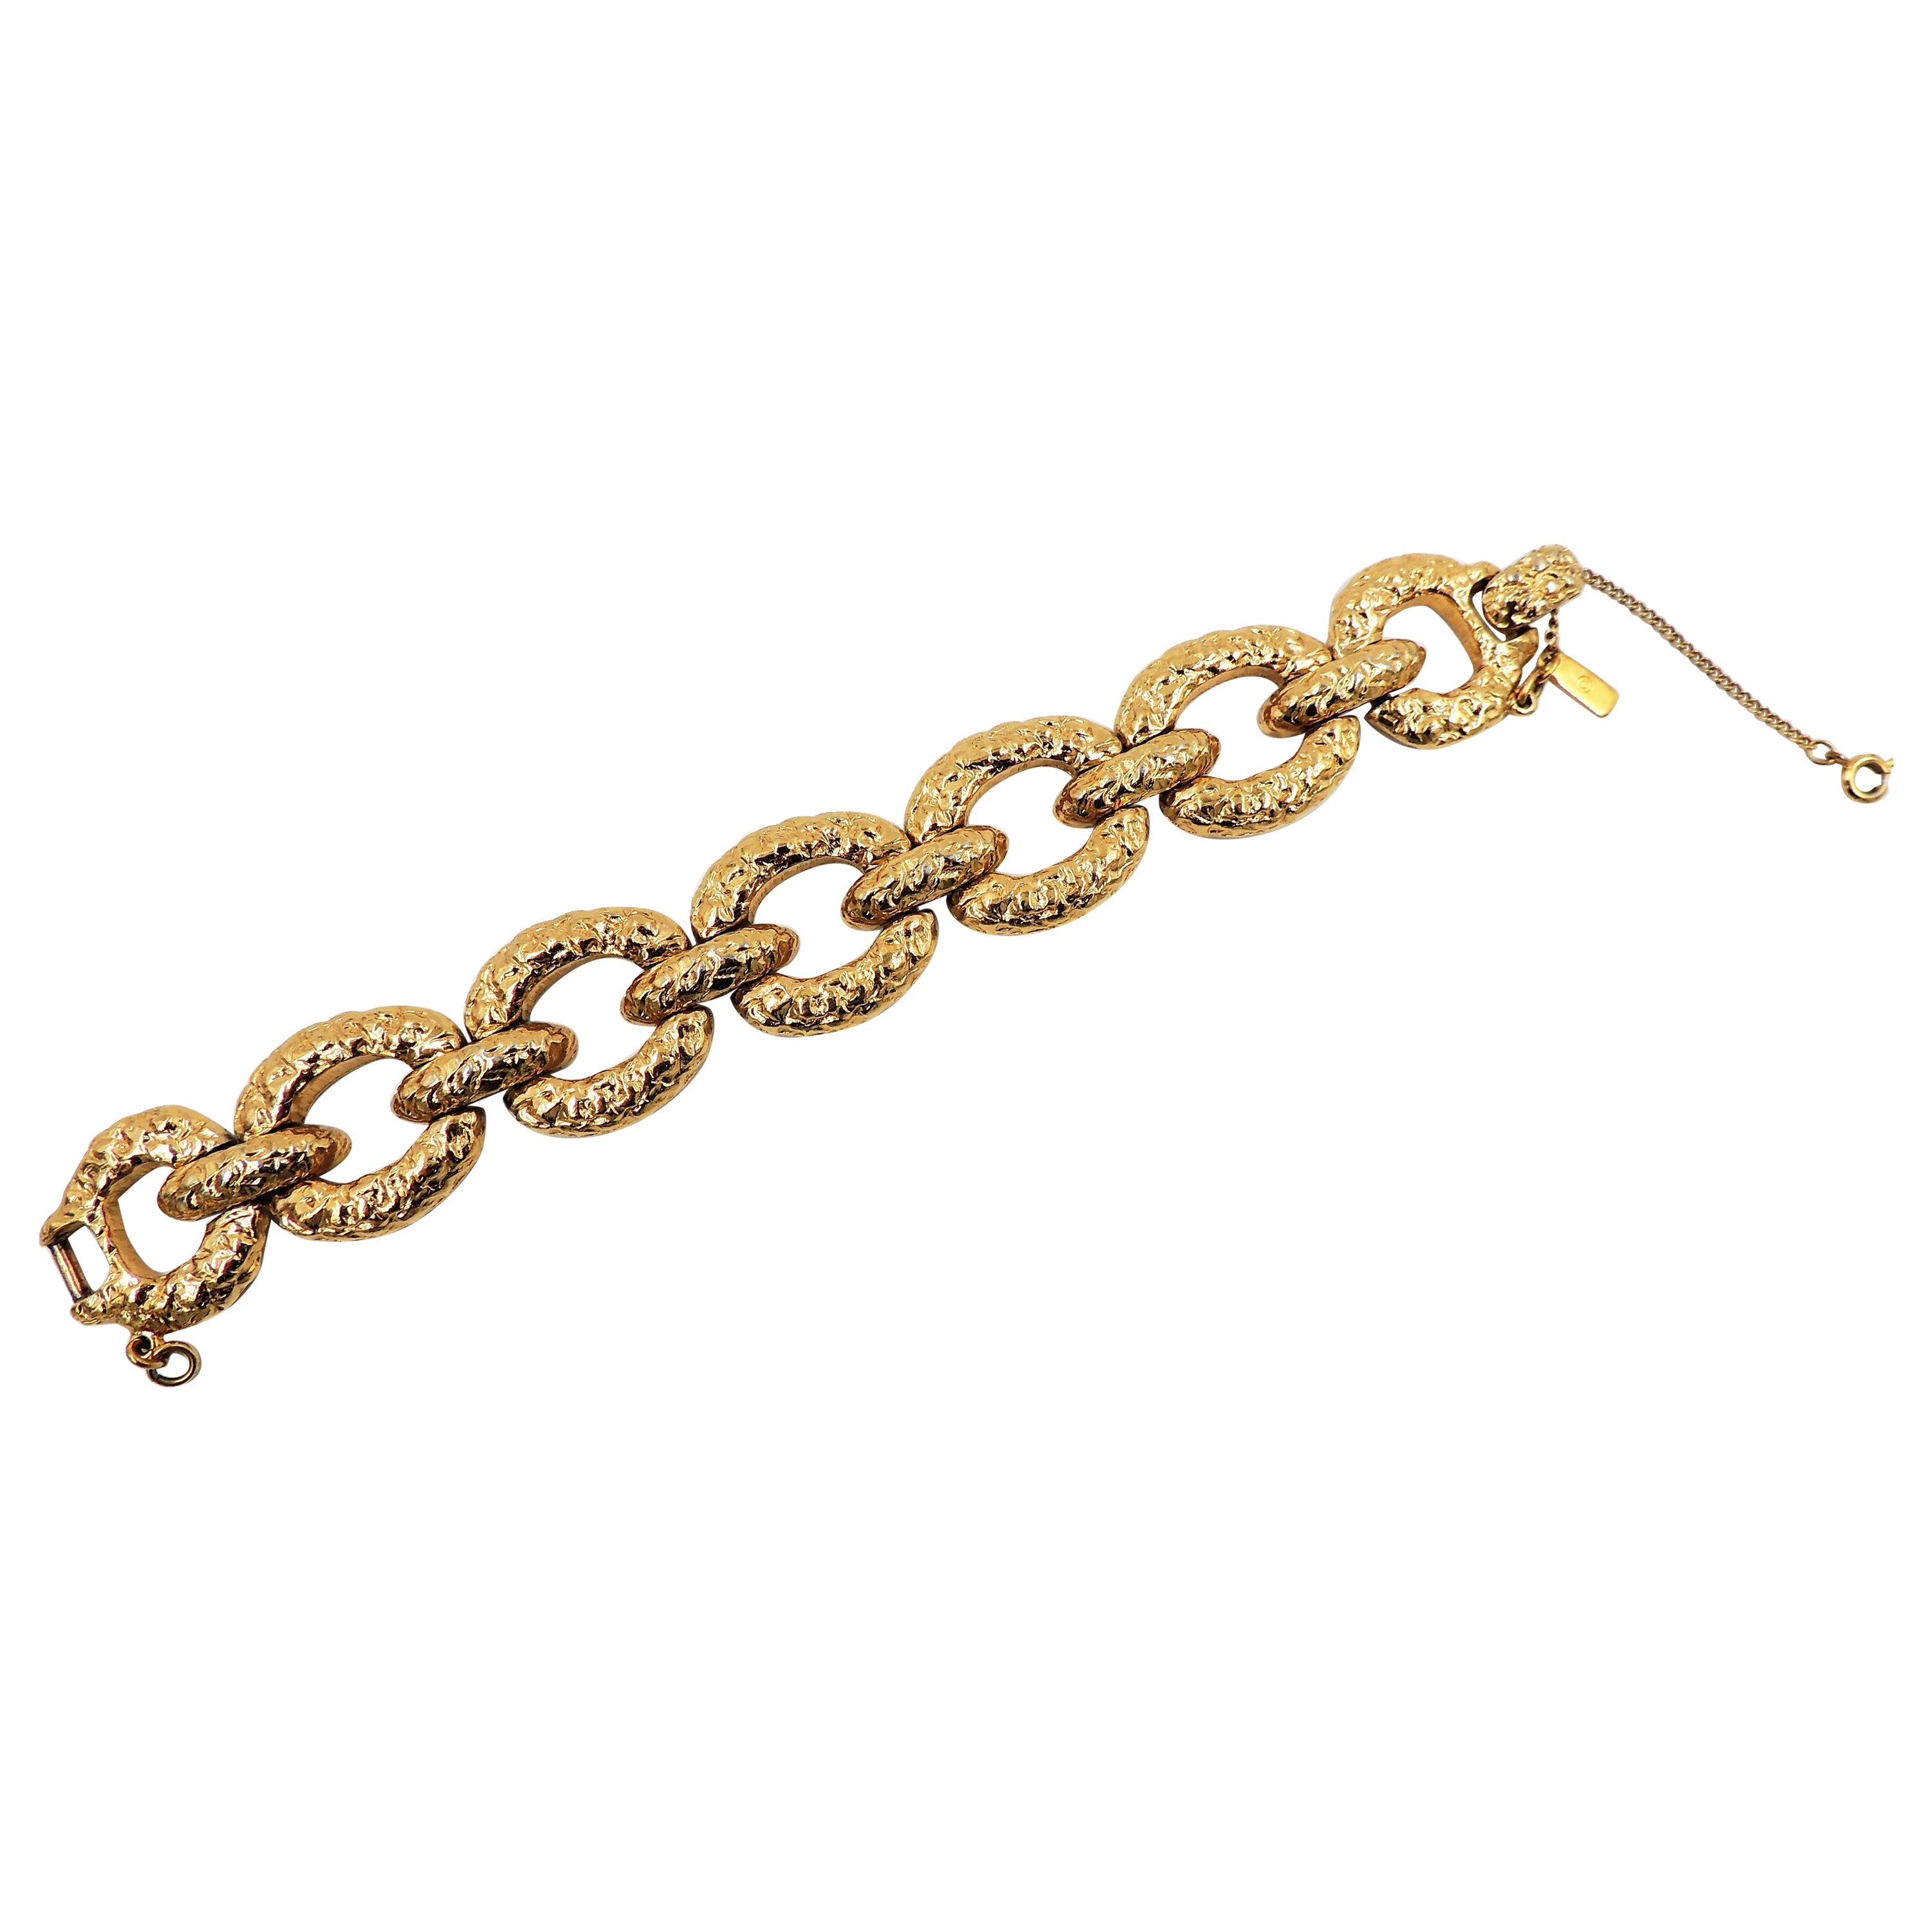 Vintage Signed Monet "Gold Nugget" Wide Link Bracelet, 1973